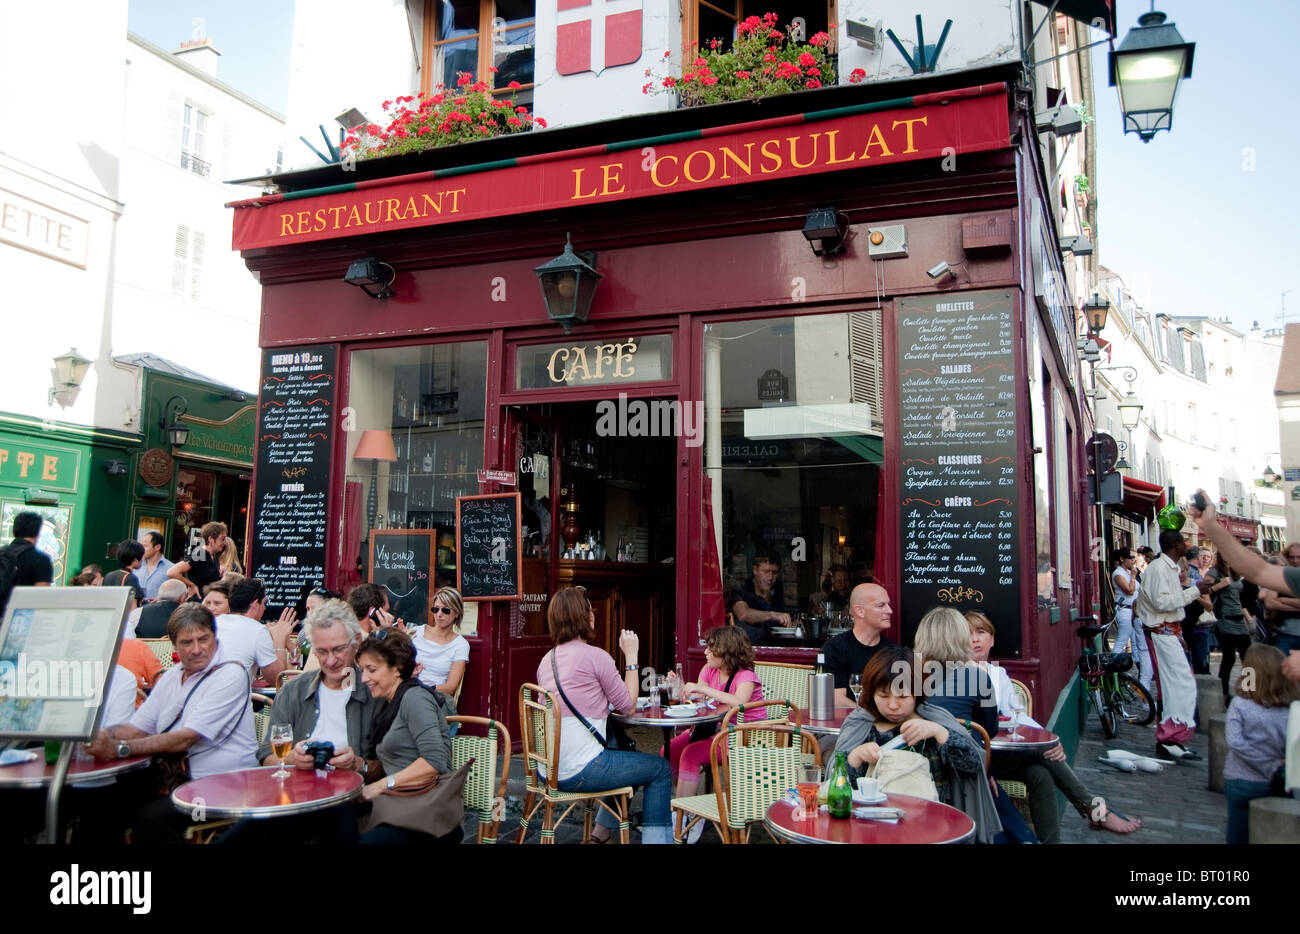 Le Consulat restaurant in Montmartre, Paris Stock Photo